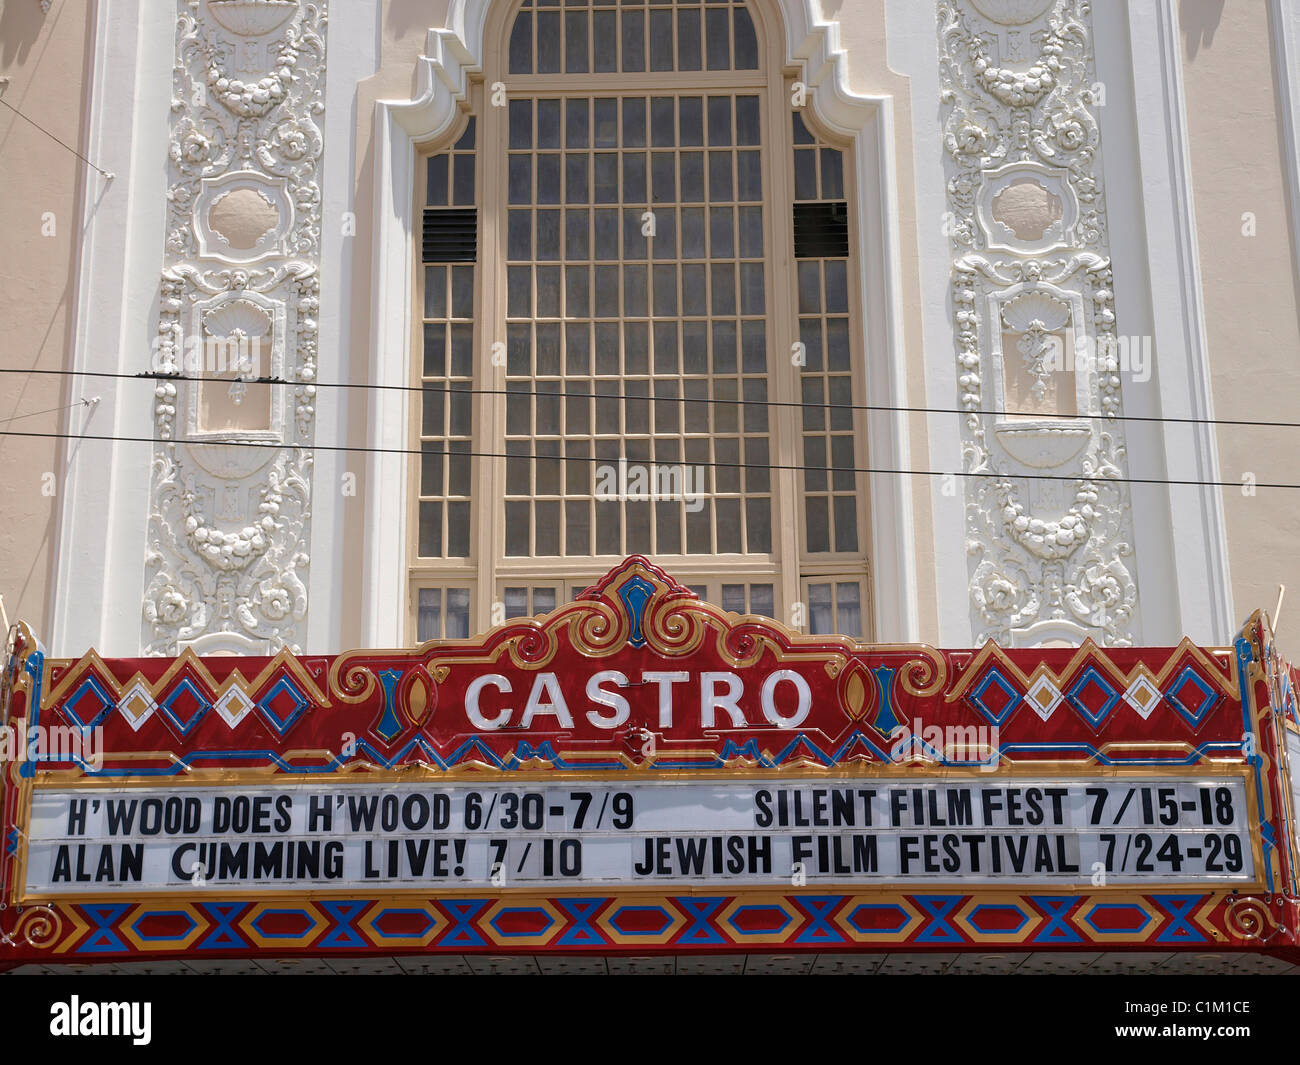 El cine de Castro es uno de los cines más populares de San Francisco.  California, EE.UU Fotografía de stock - Alamy